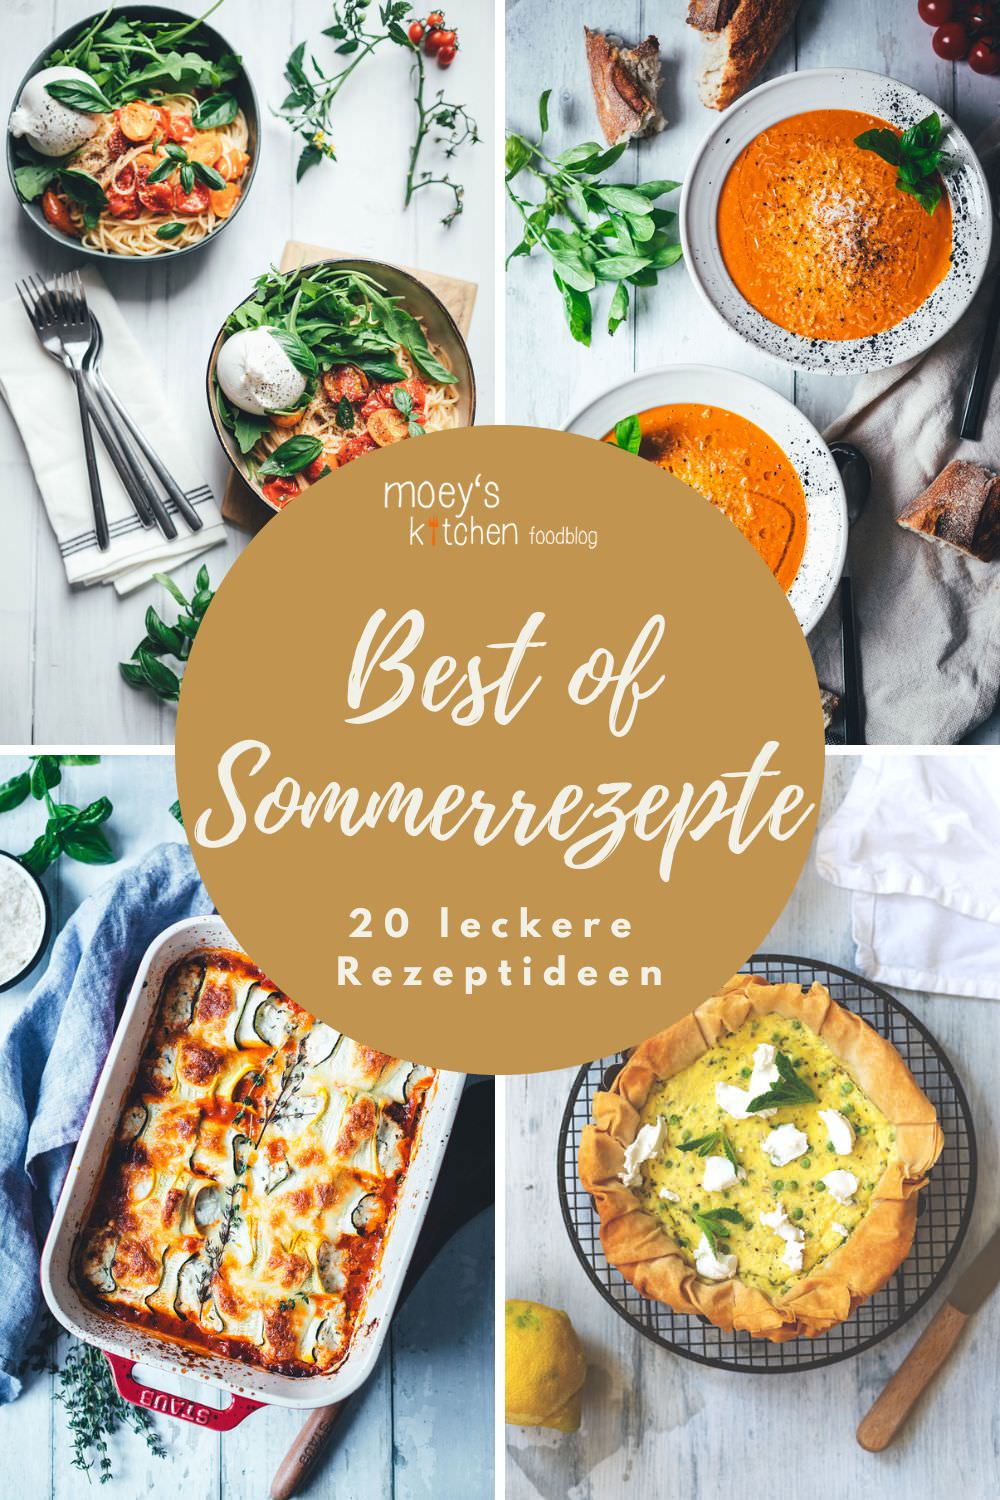 Best of Sommerrezepte – meine 20 besten Rezepte für warme Sommertage